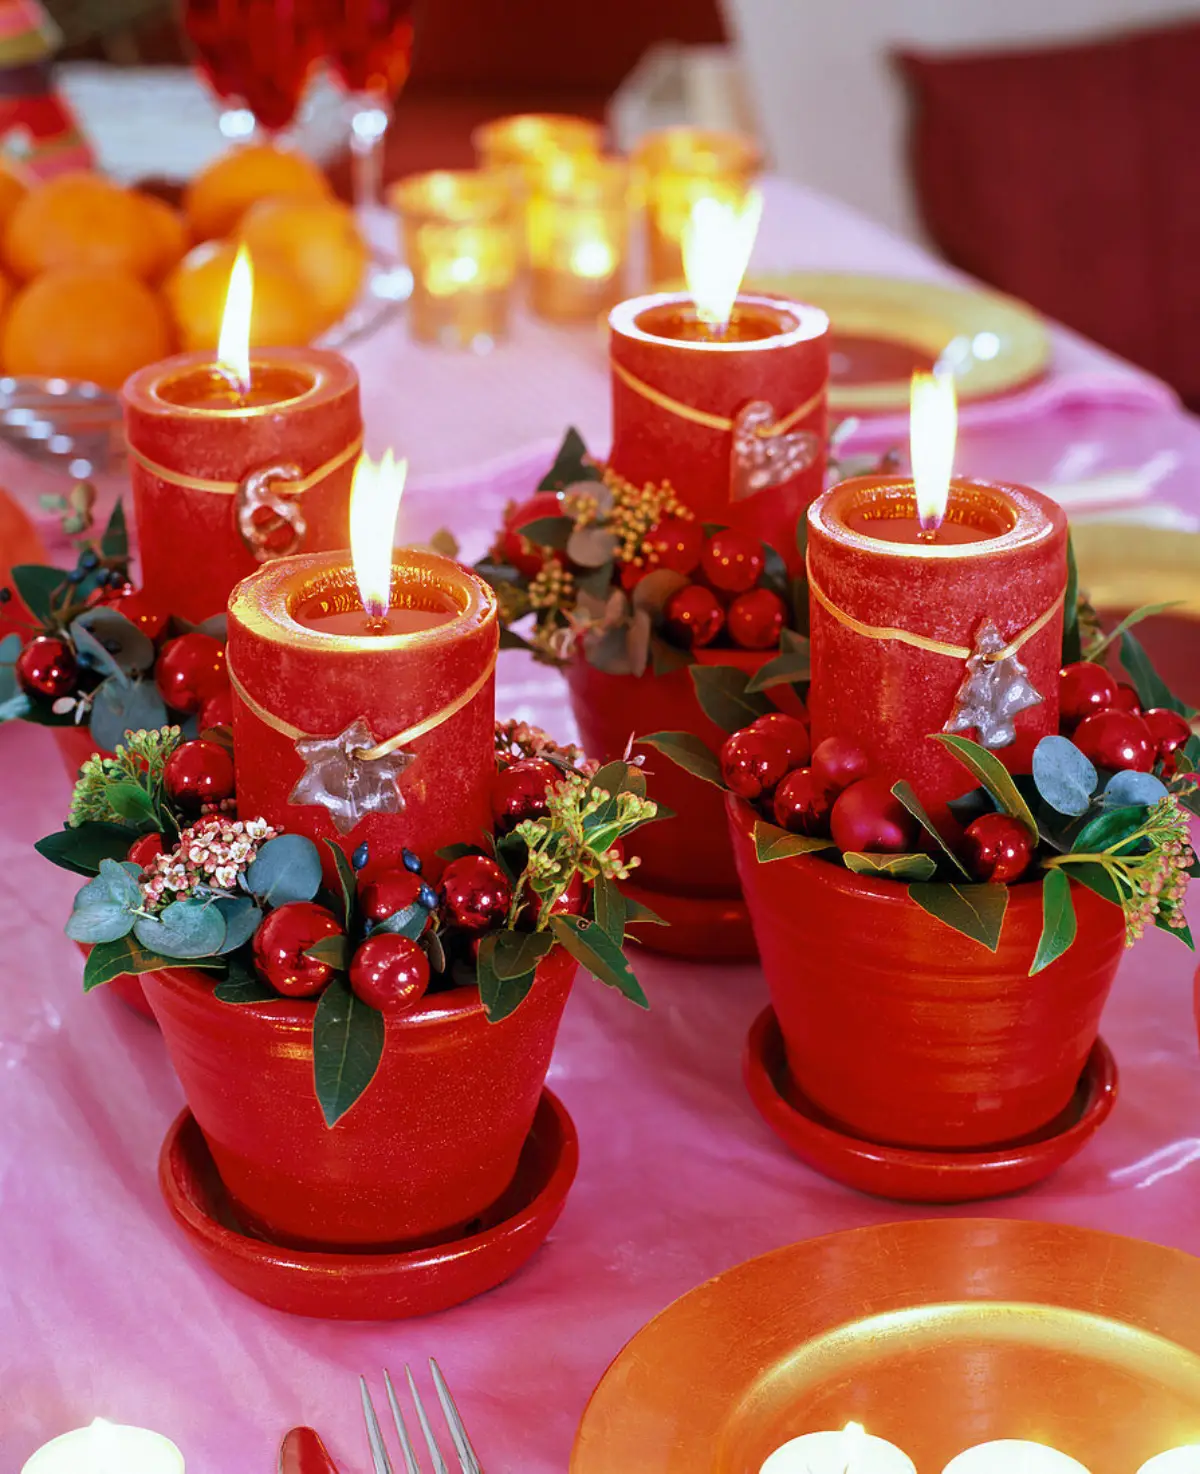 adventskranz dekorieren ideen fuer adventskranz alternativen vier tontoepfe in rot als adventskranz dekoriert